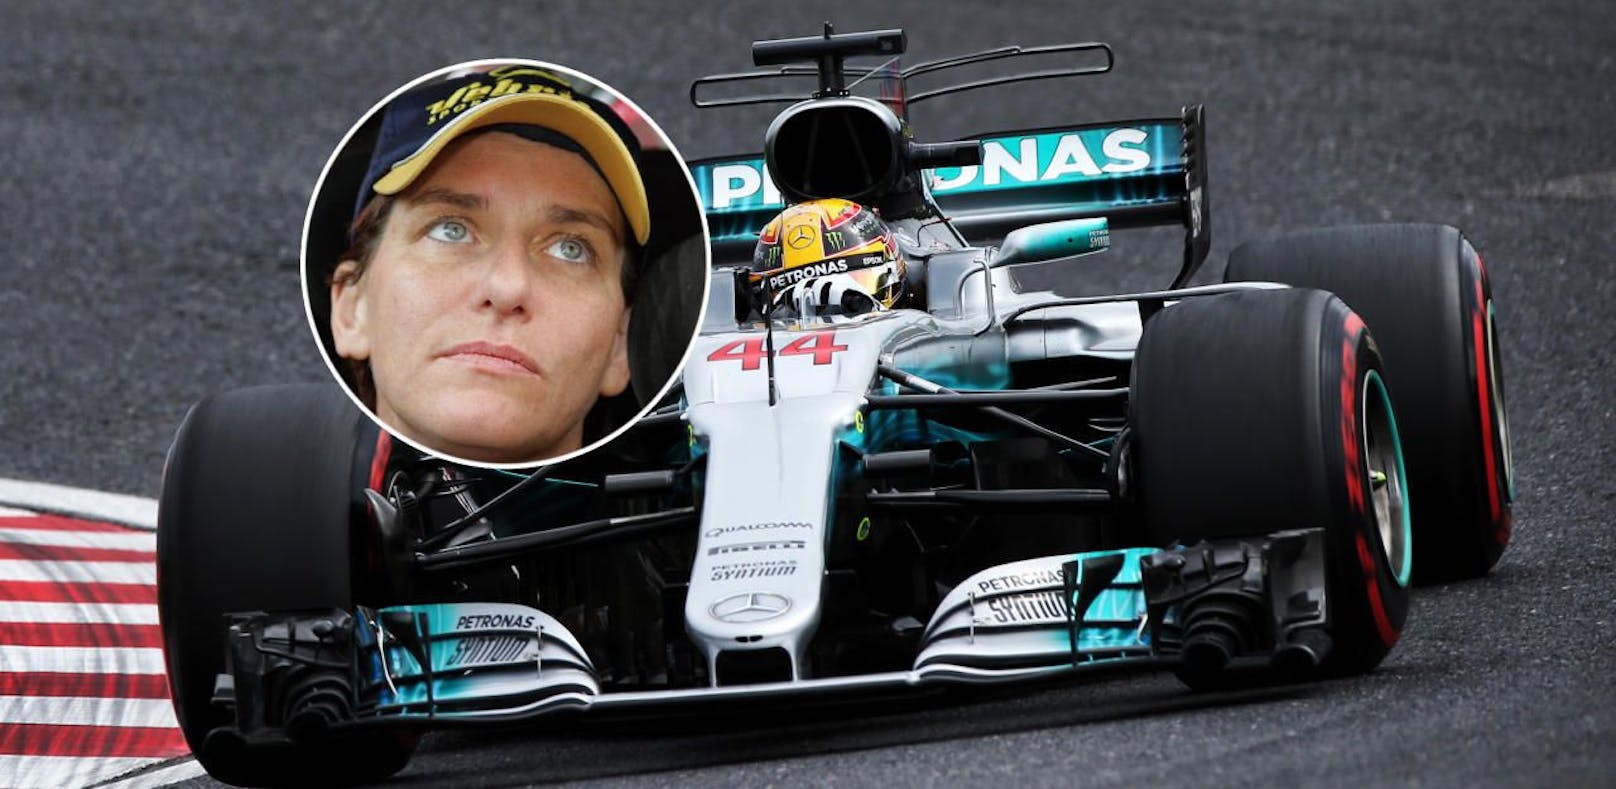 Frau kritisiert F1-Männer: "Nur 1,60 groß, 55 Kilo"